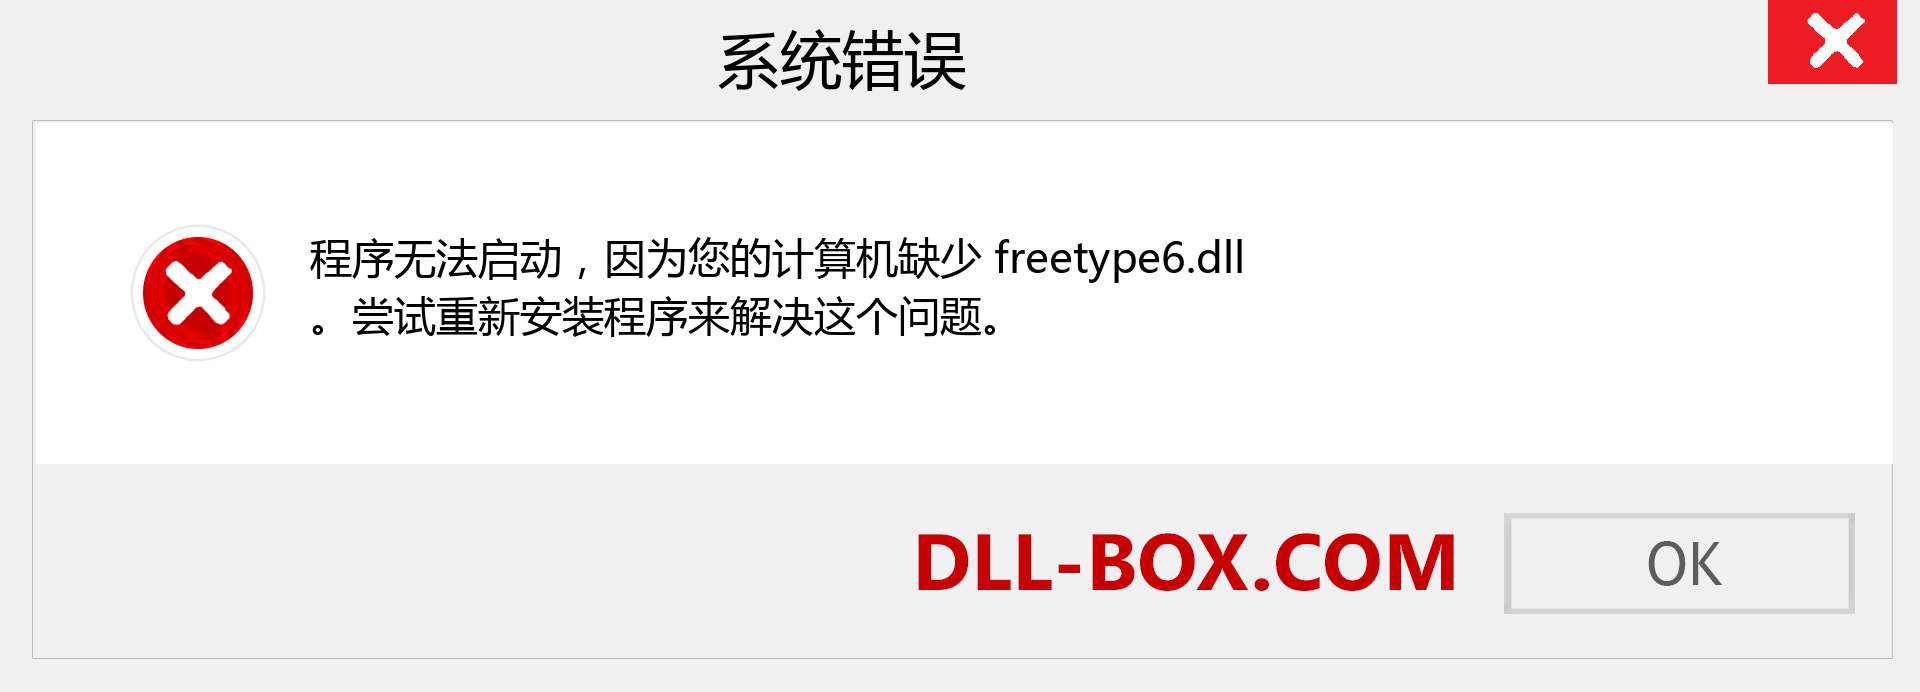 freetype6.dll 文件丢失？。 适用于 Windows 7、8、10 的下载 - 修复 Windows、照片、图像上的 freetype6 dll 丢失错误